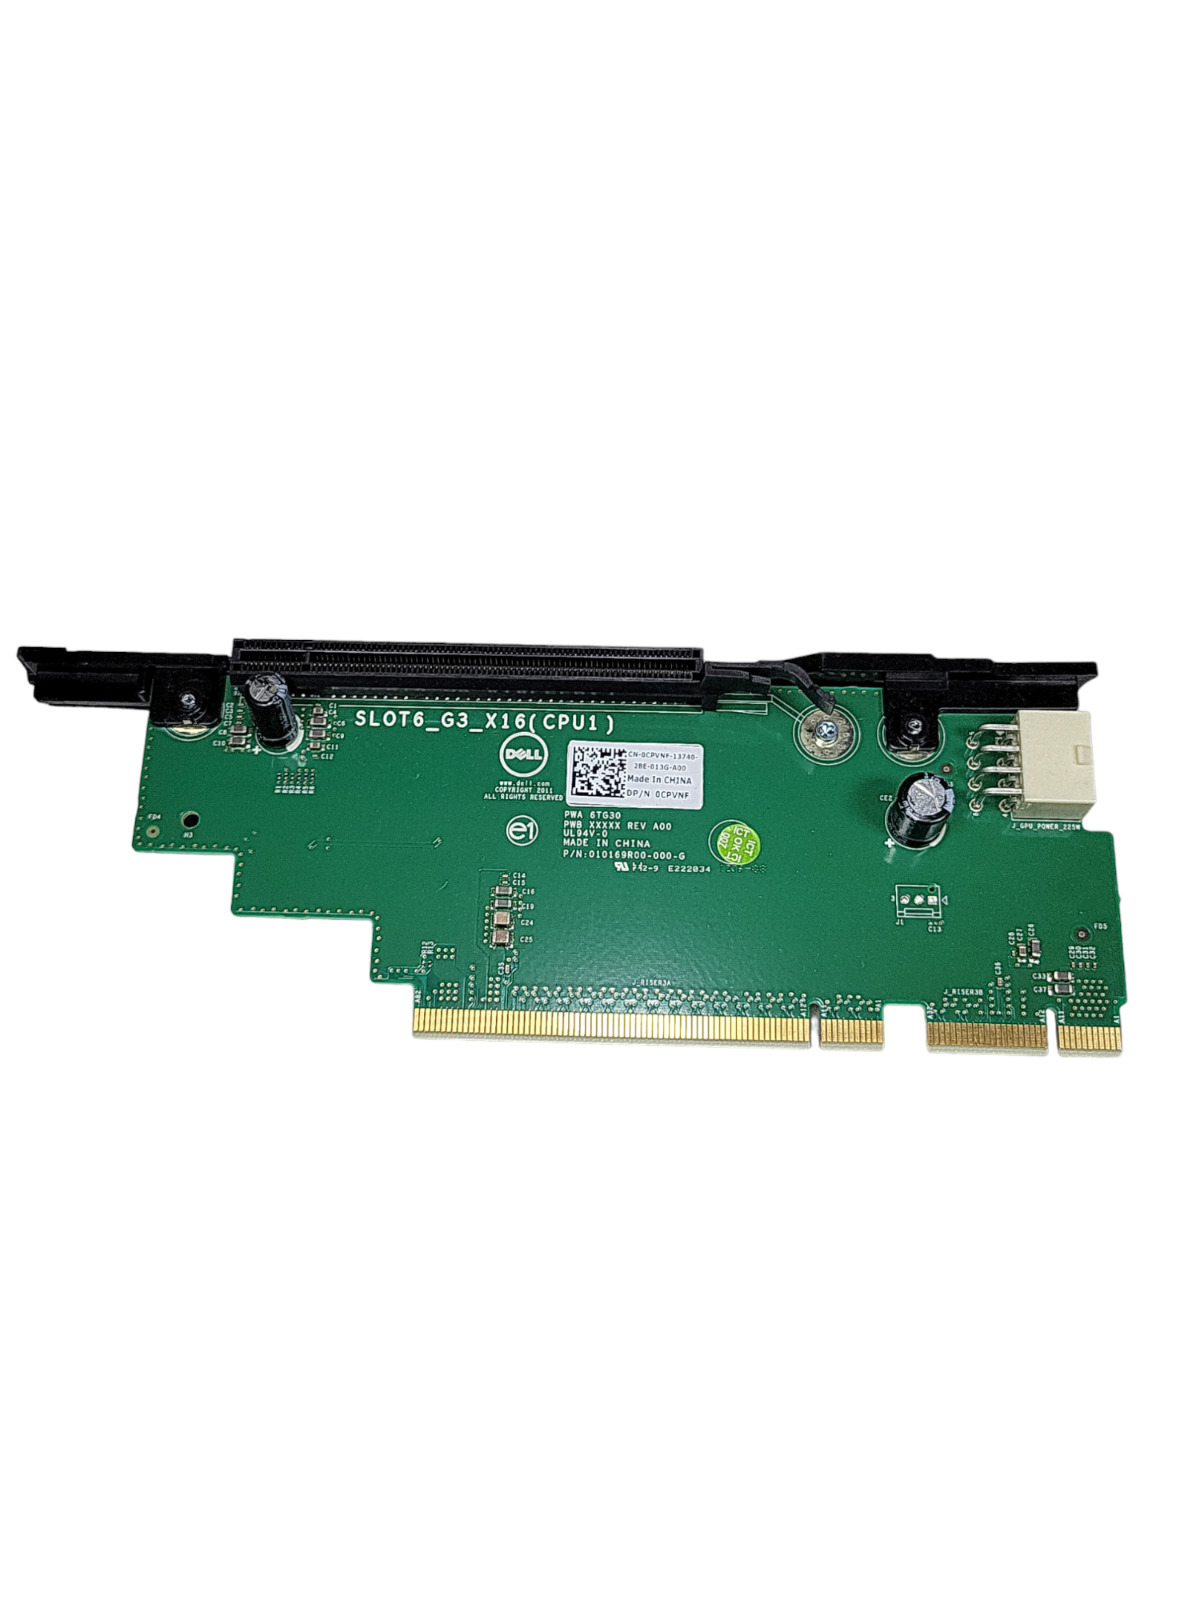 Dell PowerEdge R720 R720xD PCI-E x16 Riser Board #3 Slot 6 CPVNF